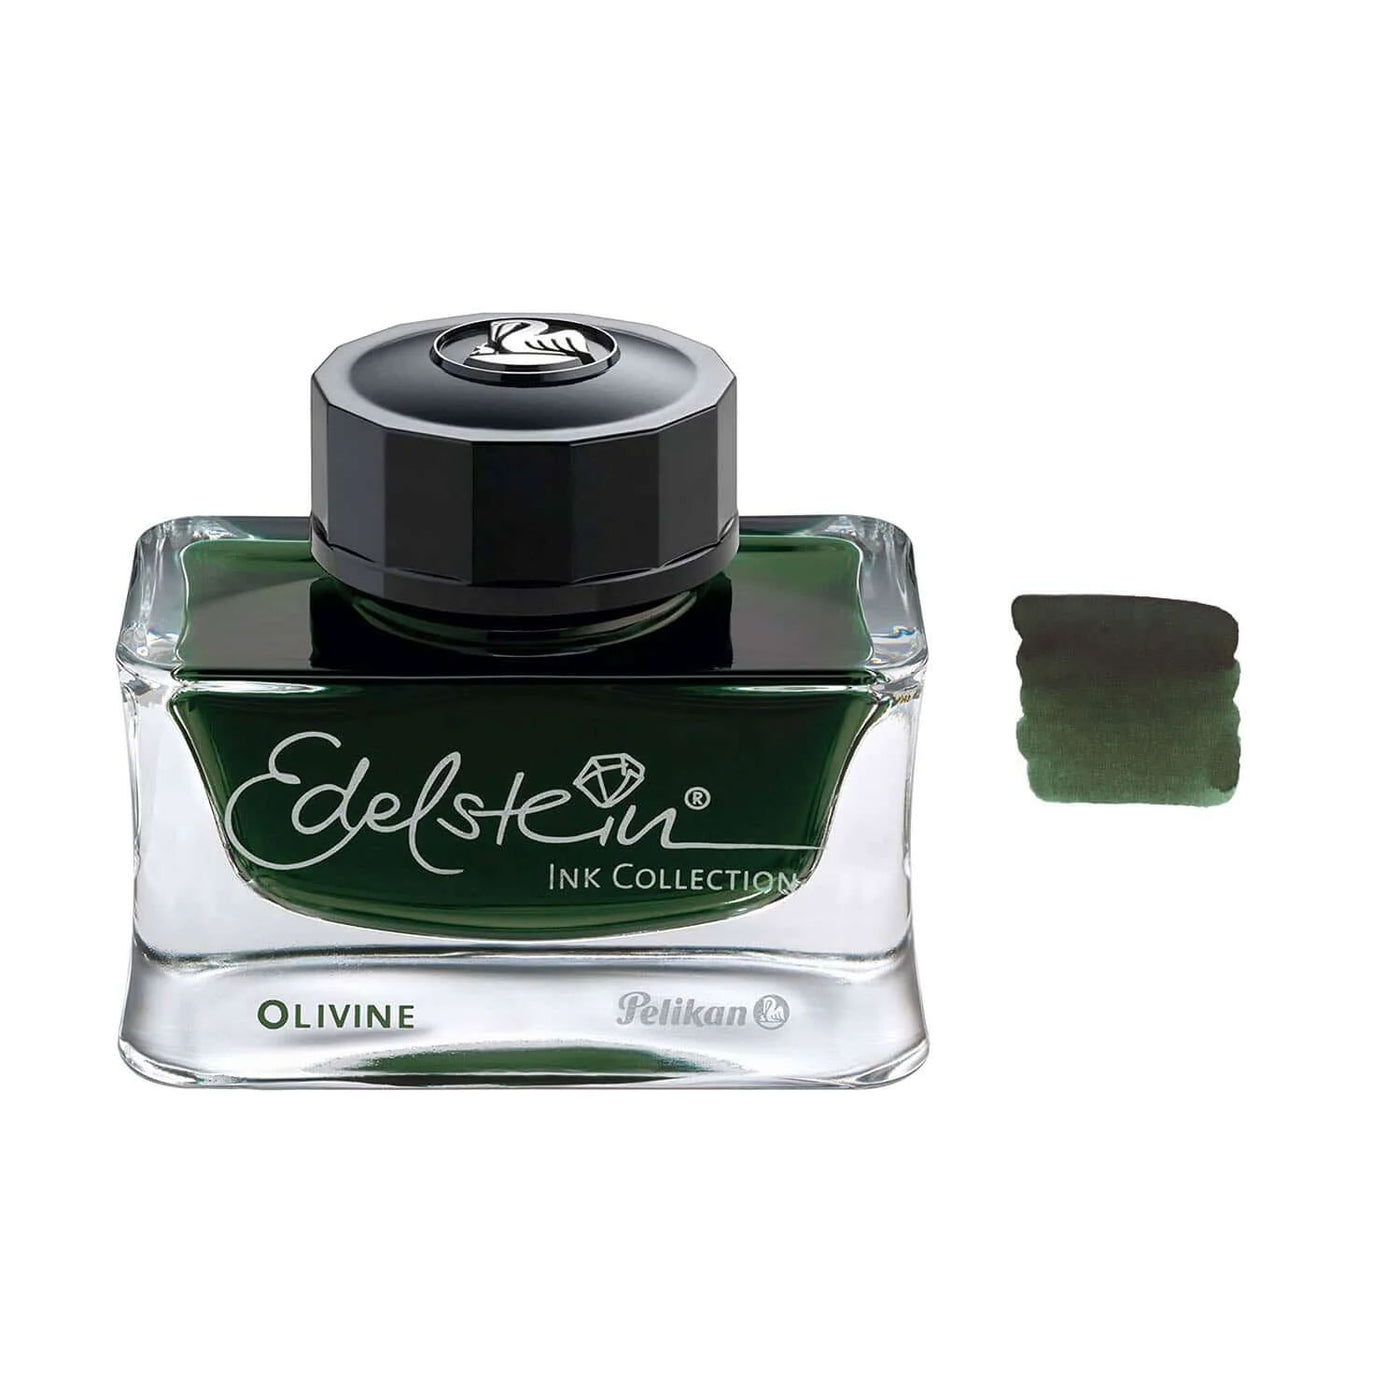 Pelikan Edelstein Ink Bottle, Olivine (Green) - 50ml